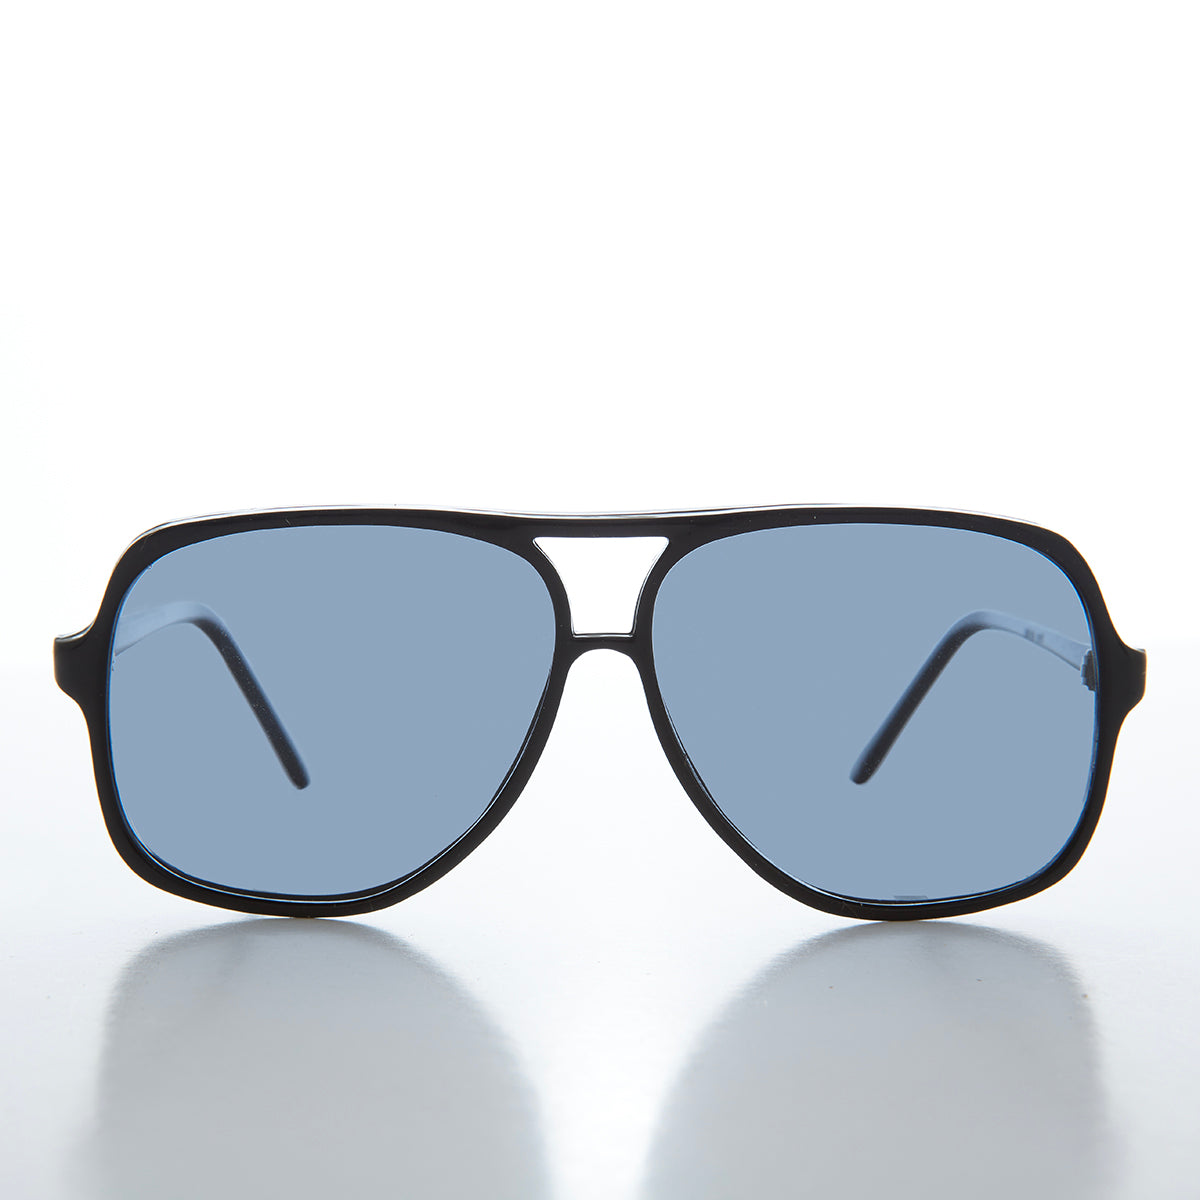 80s Square Aviator Vintage Sunglasses - Feller